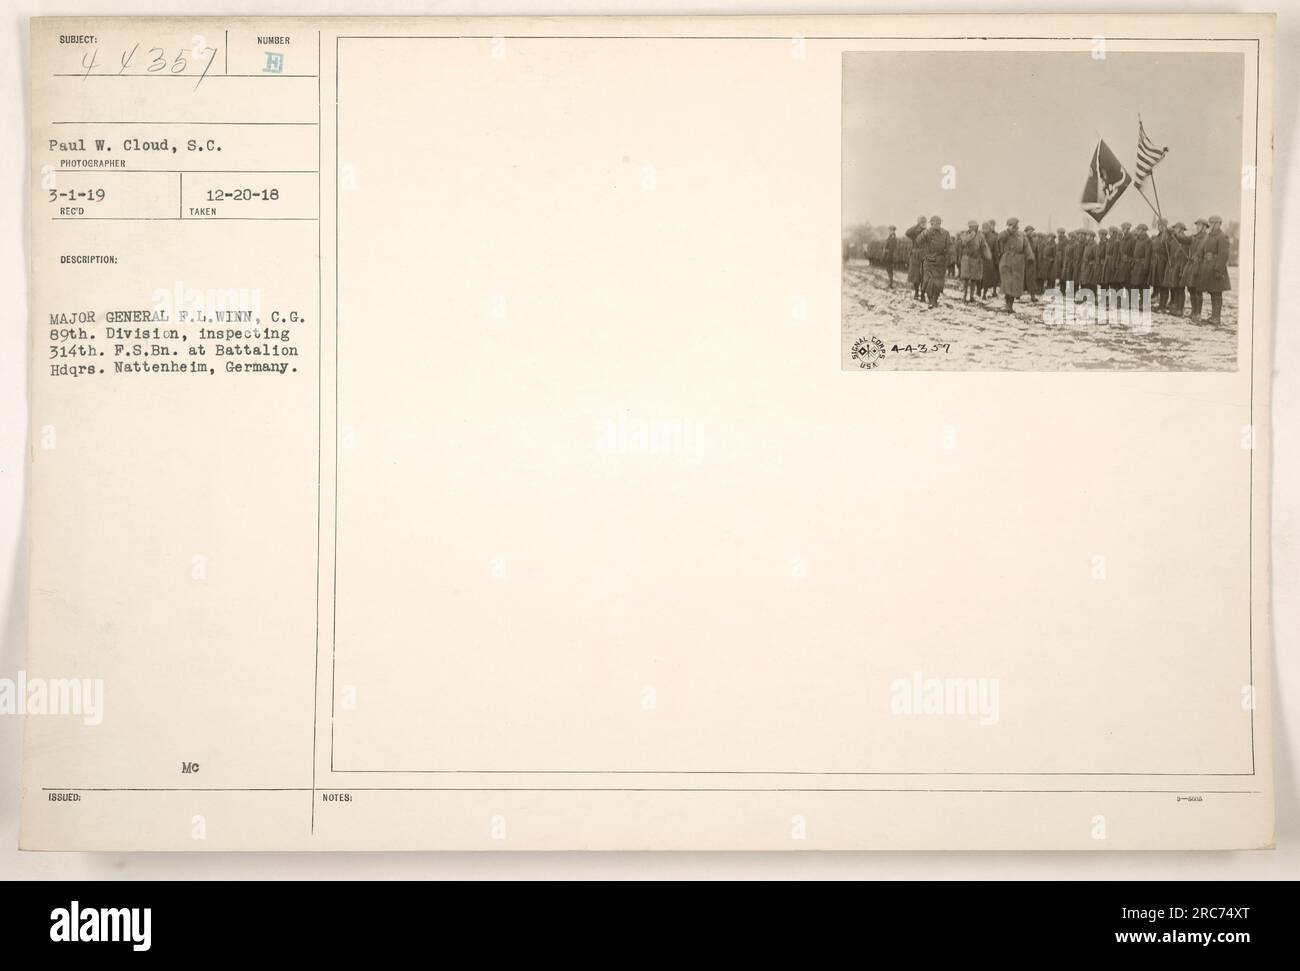 Generalmajor F.L. Winn, der Befehlshaber der 89. Division, inspiziert das 314. Feldsignalbataillon im Bataillonshauptquartier in Nattenheim. Dieses Foto wurde am 20. Dezember 1918 von Paul W. Cloud aufgenommen. Stockfoto